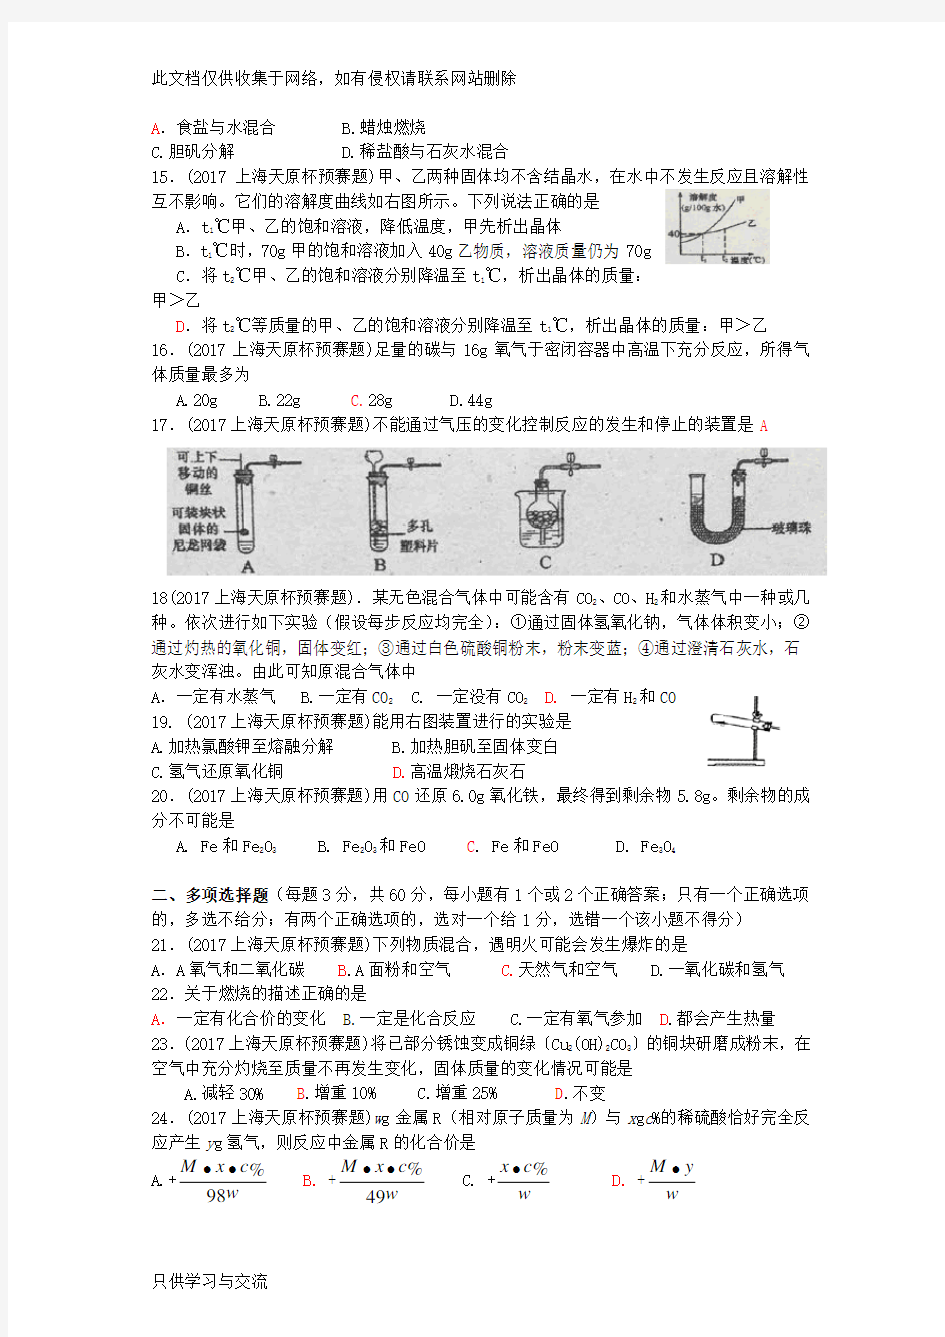 上海市初中学生化学竞赛(天原杯)预赛试卷与答案讲解学习